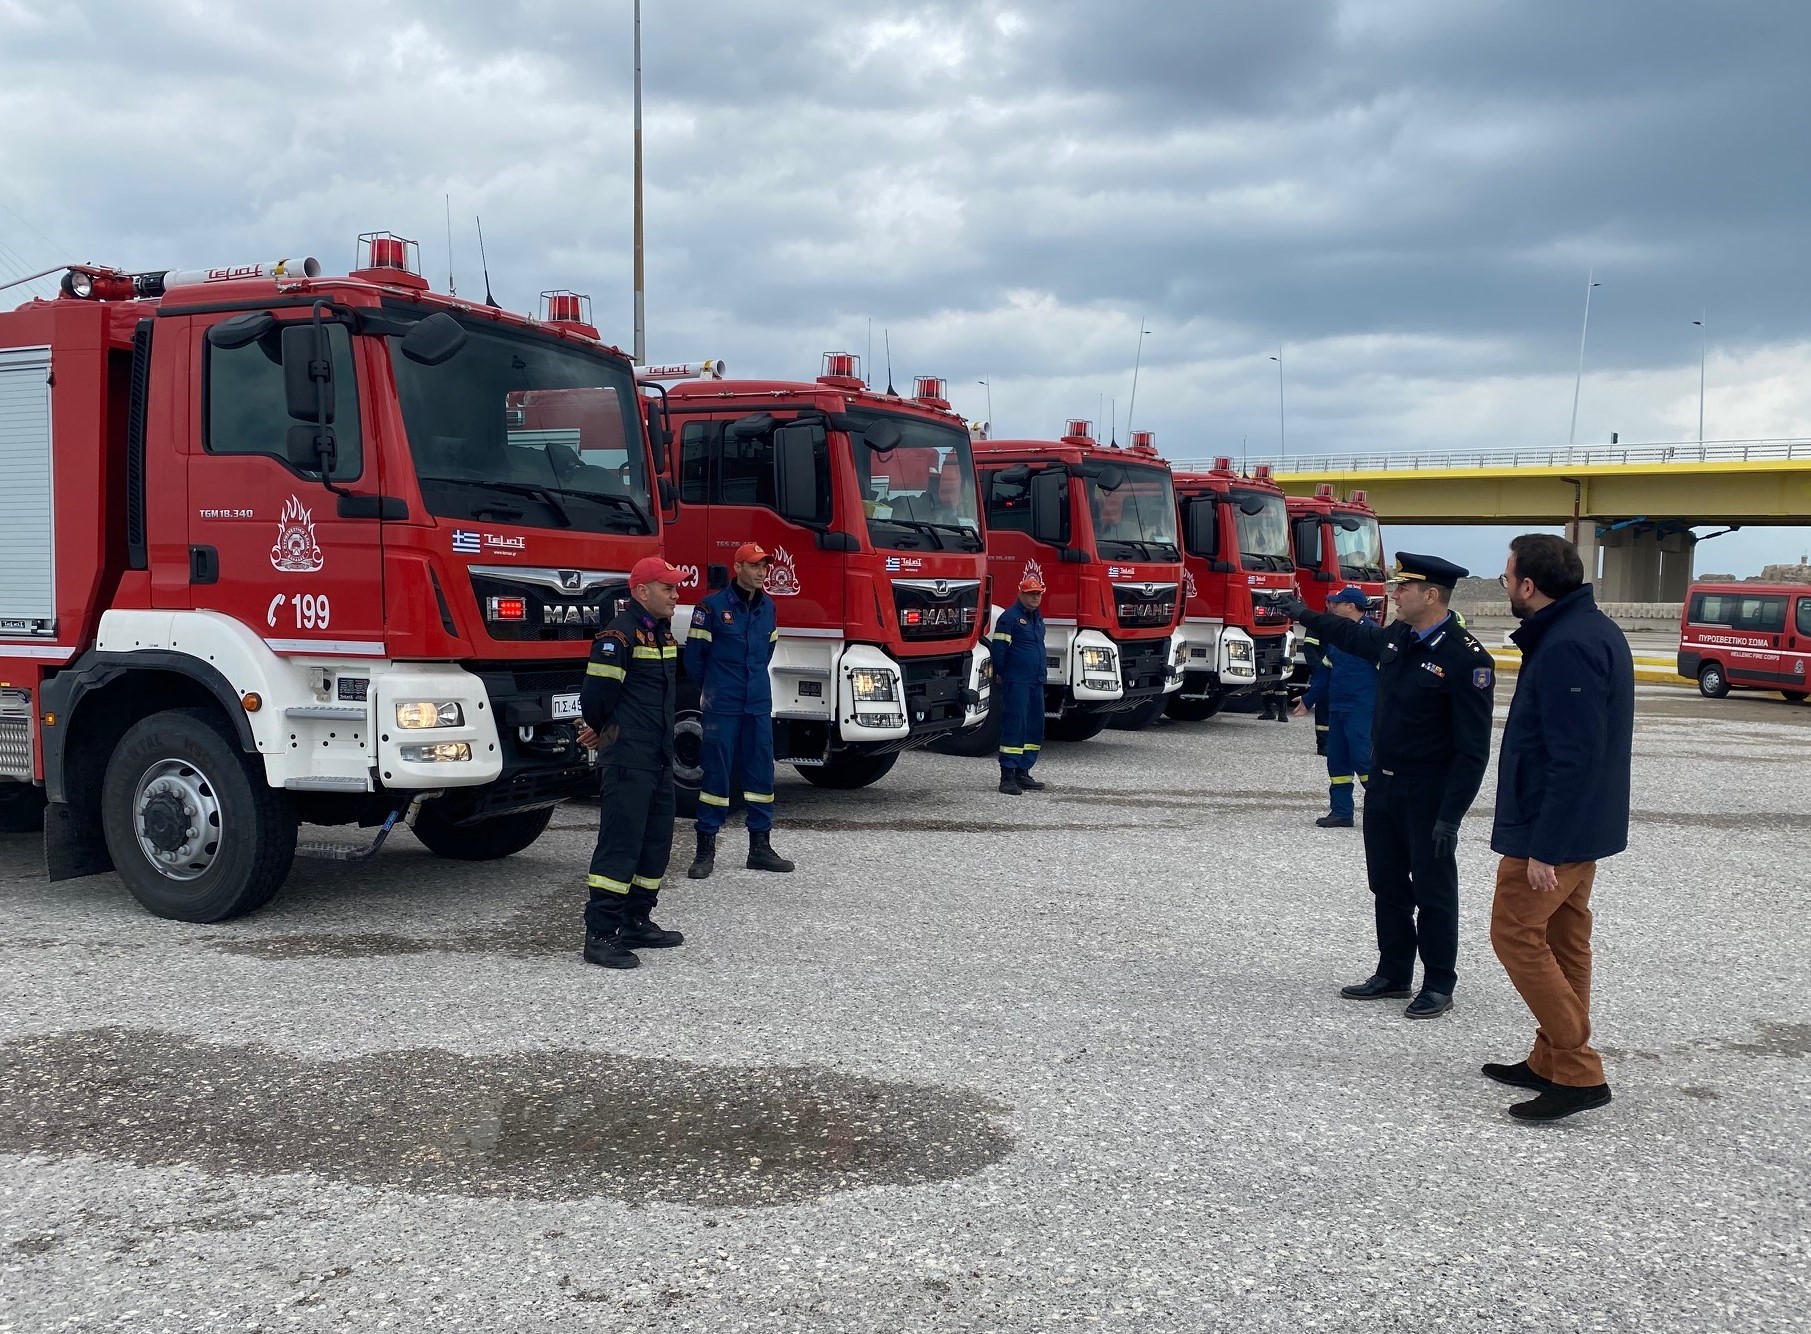 Περιφέρεια Δυτικής Ελλάδας: Έφτασαν τέσσερα ακόμα νέα οχήματα για τις πυροσβεστικές δυνάμεις στη Δυτική Ελλάδα, ενώ αναμένονται άλλα είκοσι (photos)